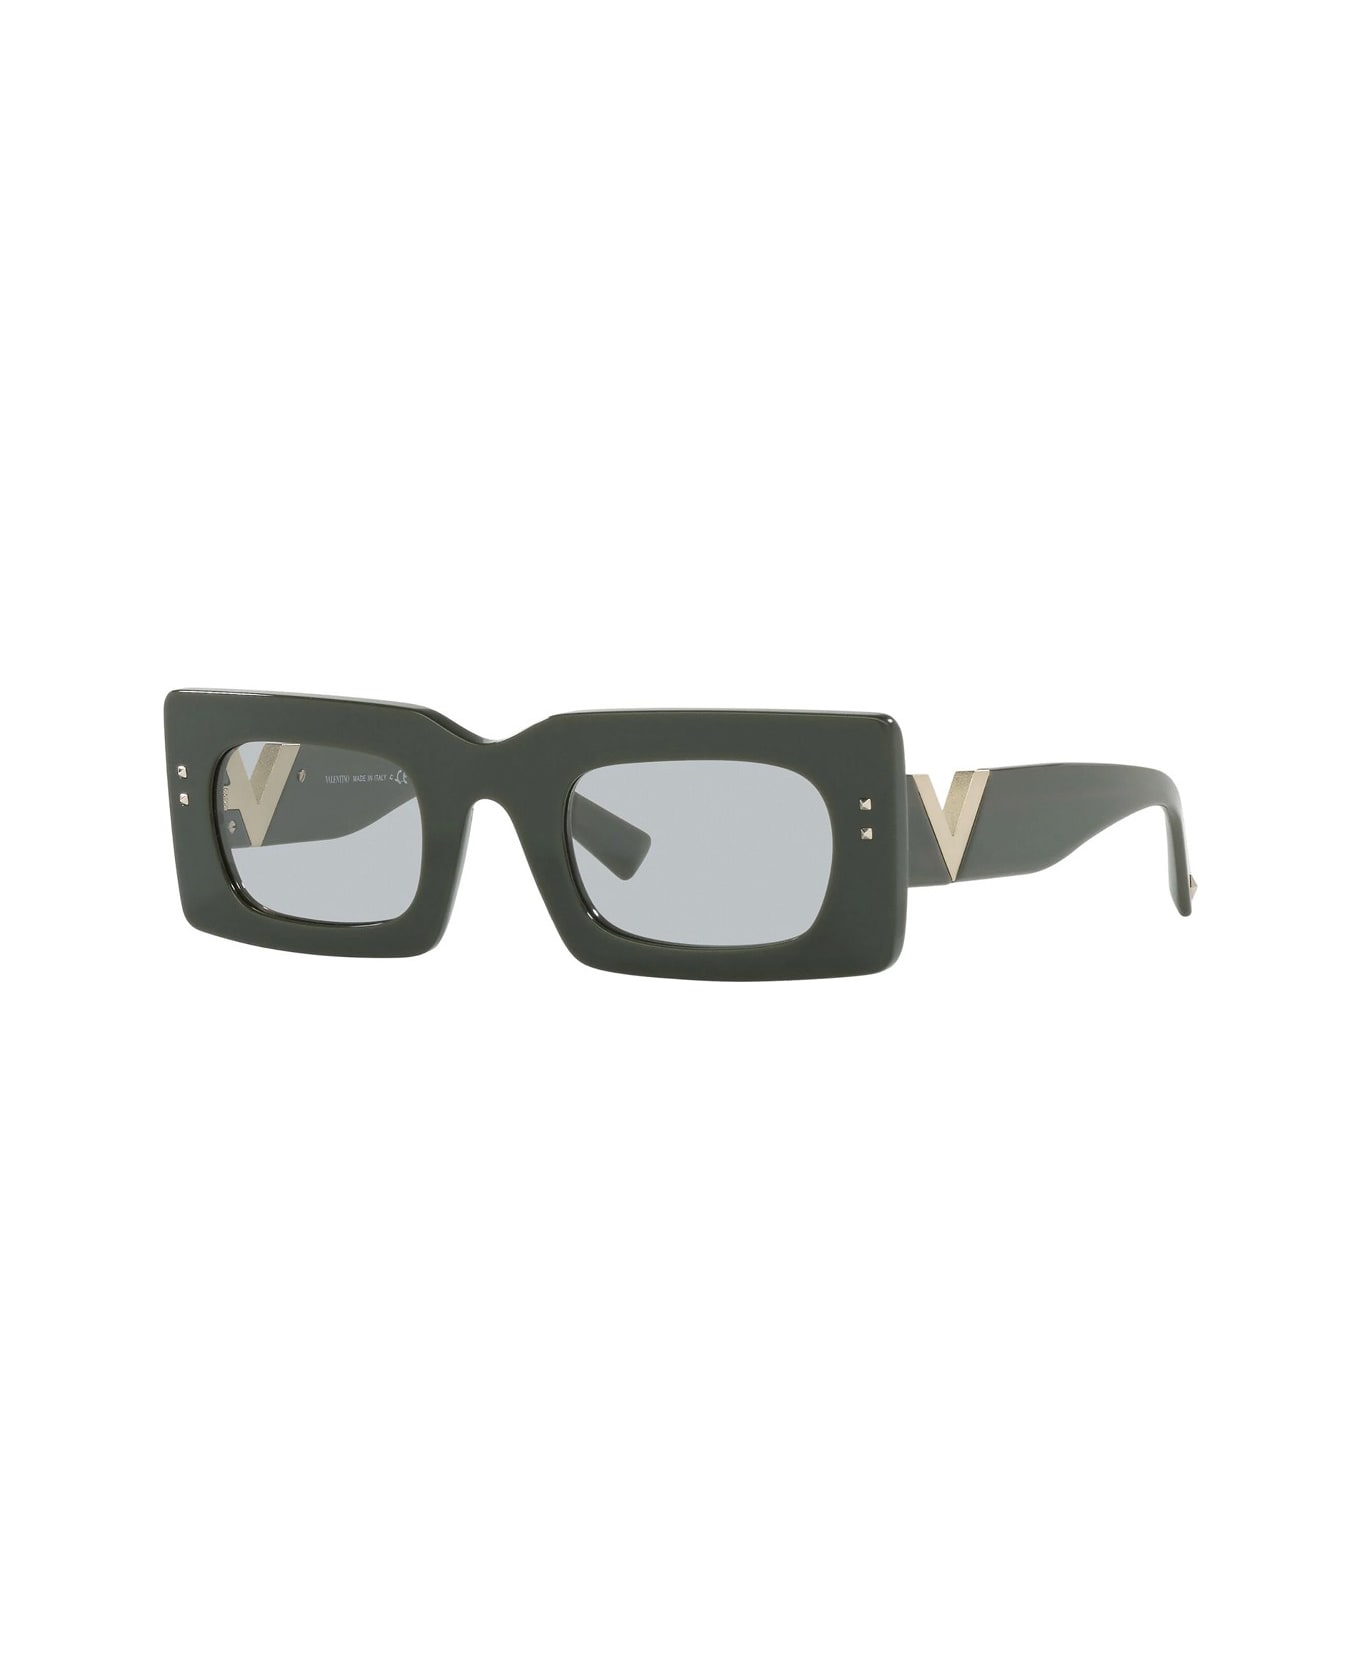 Valentino Eyewear Va 4094 Sunglasses - Verde サングラス